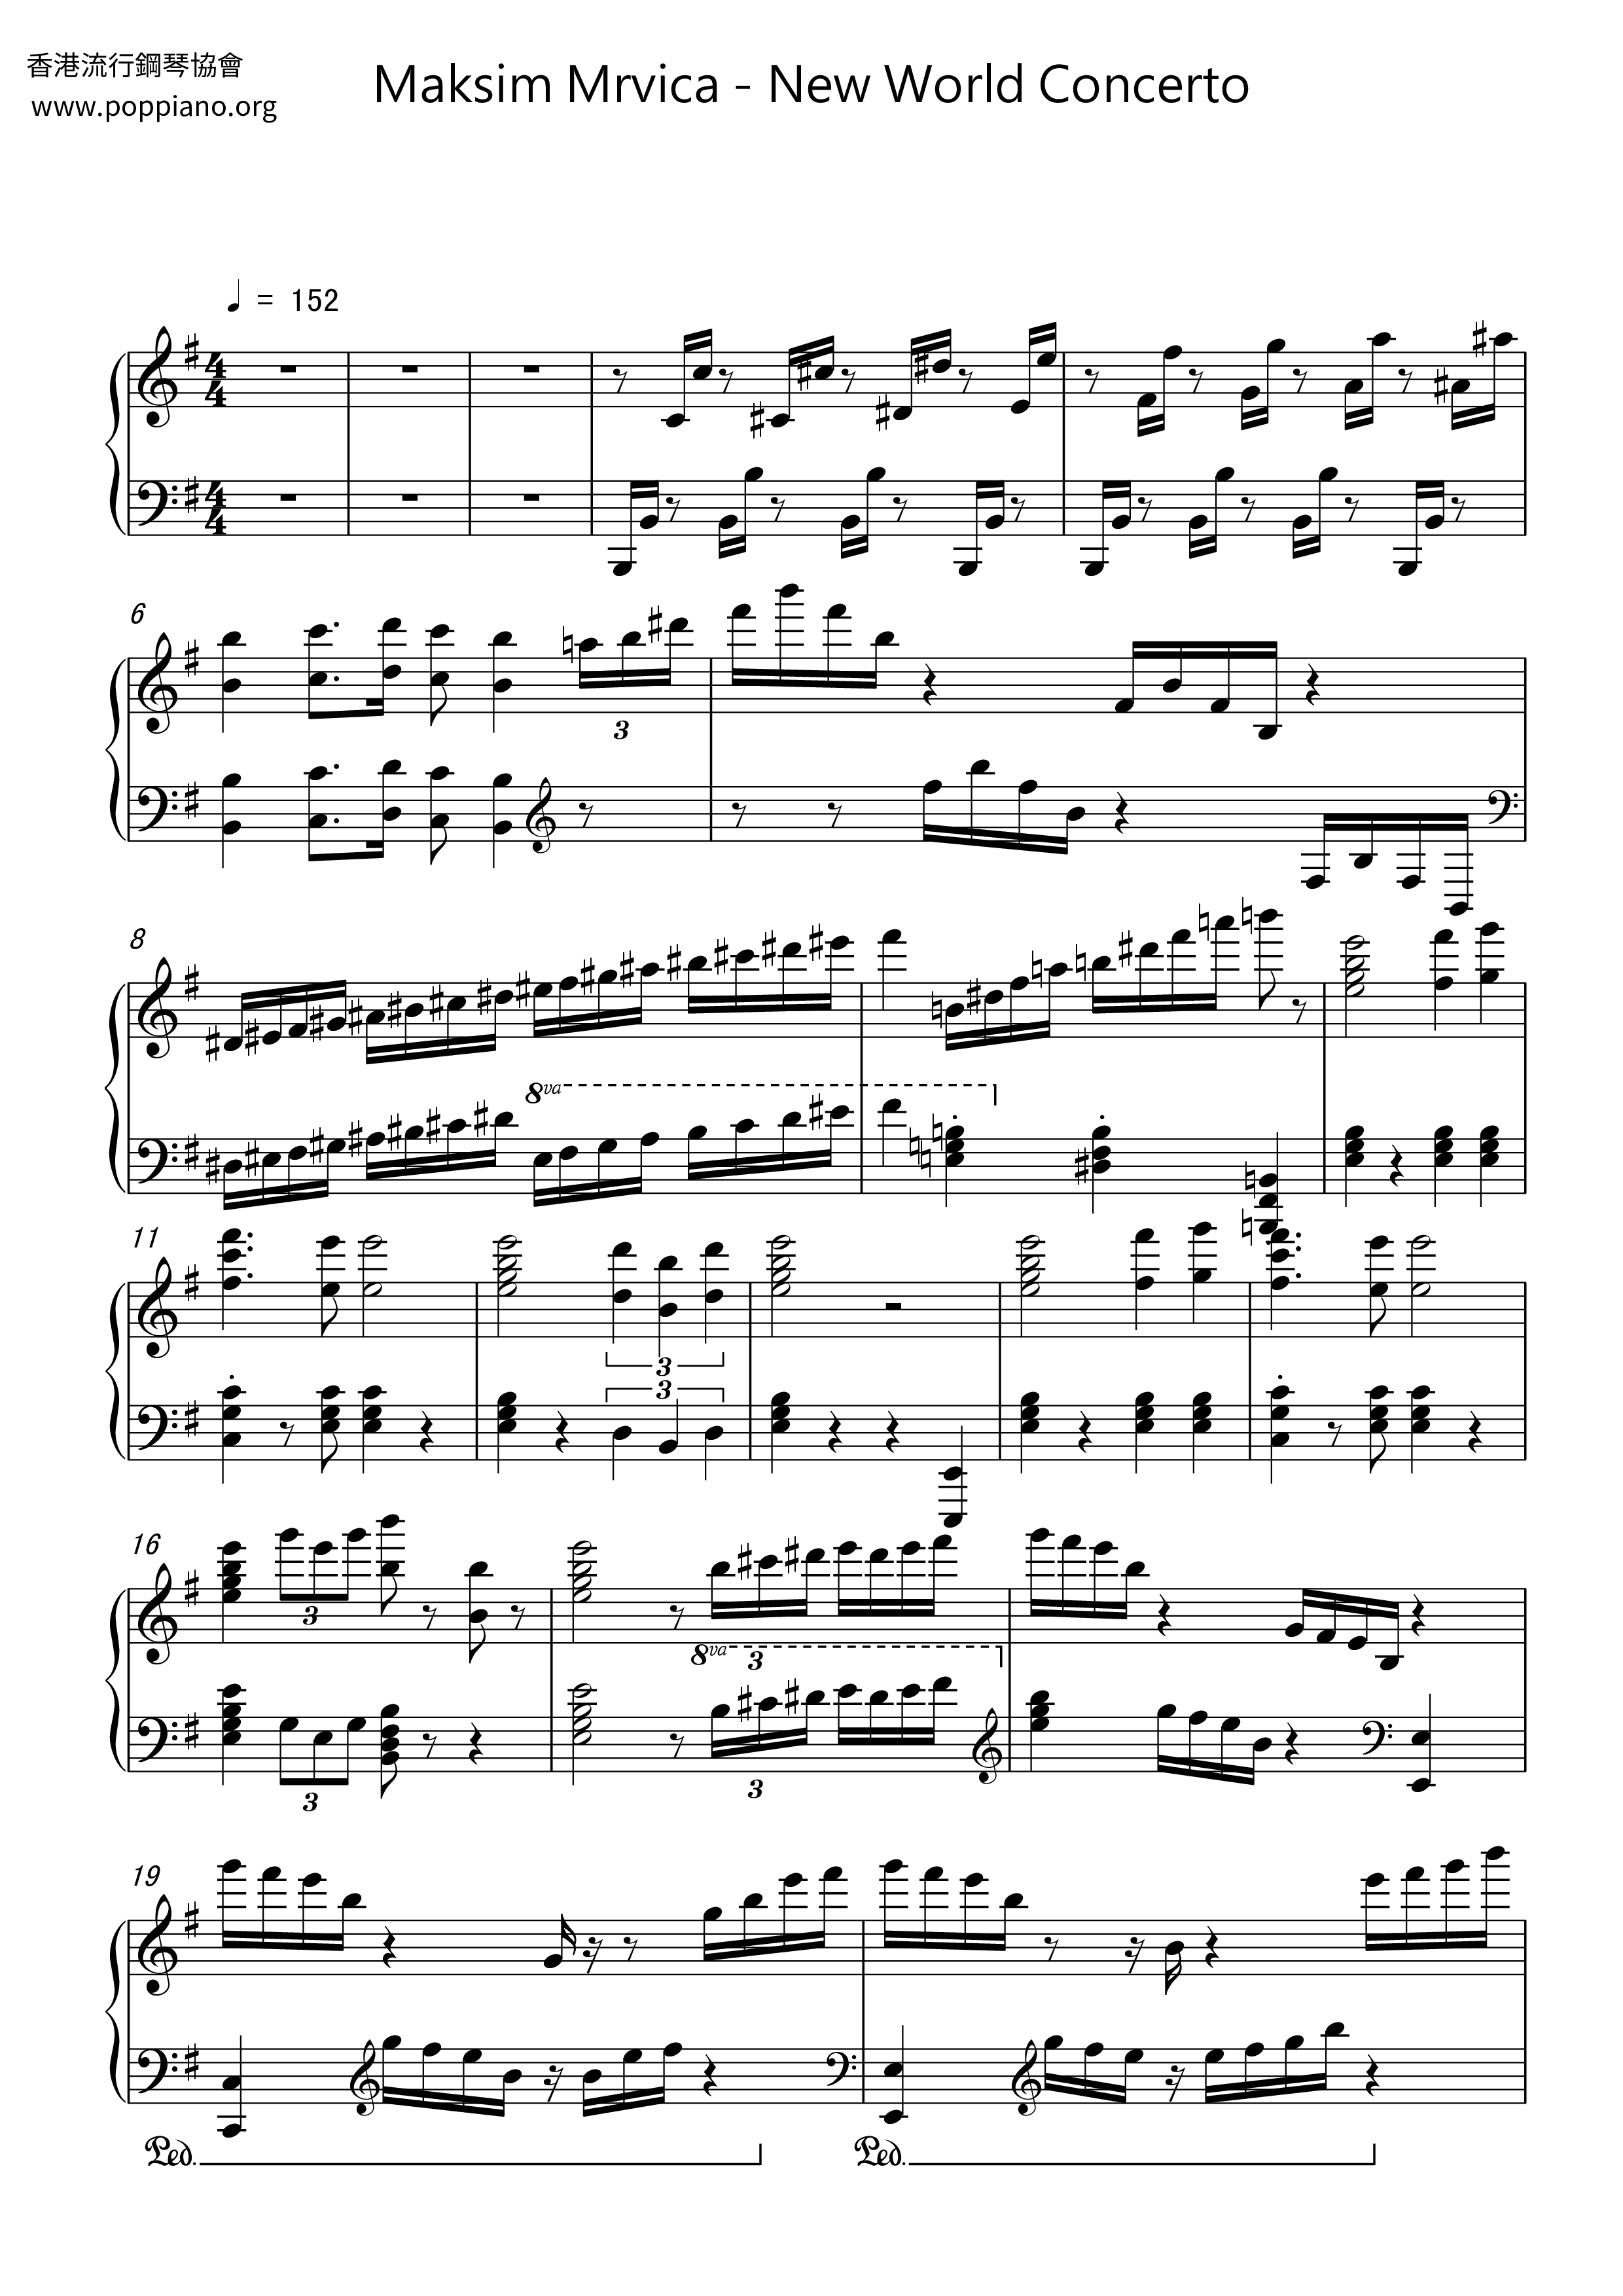 New World Concerto Score